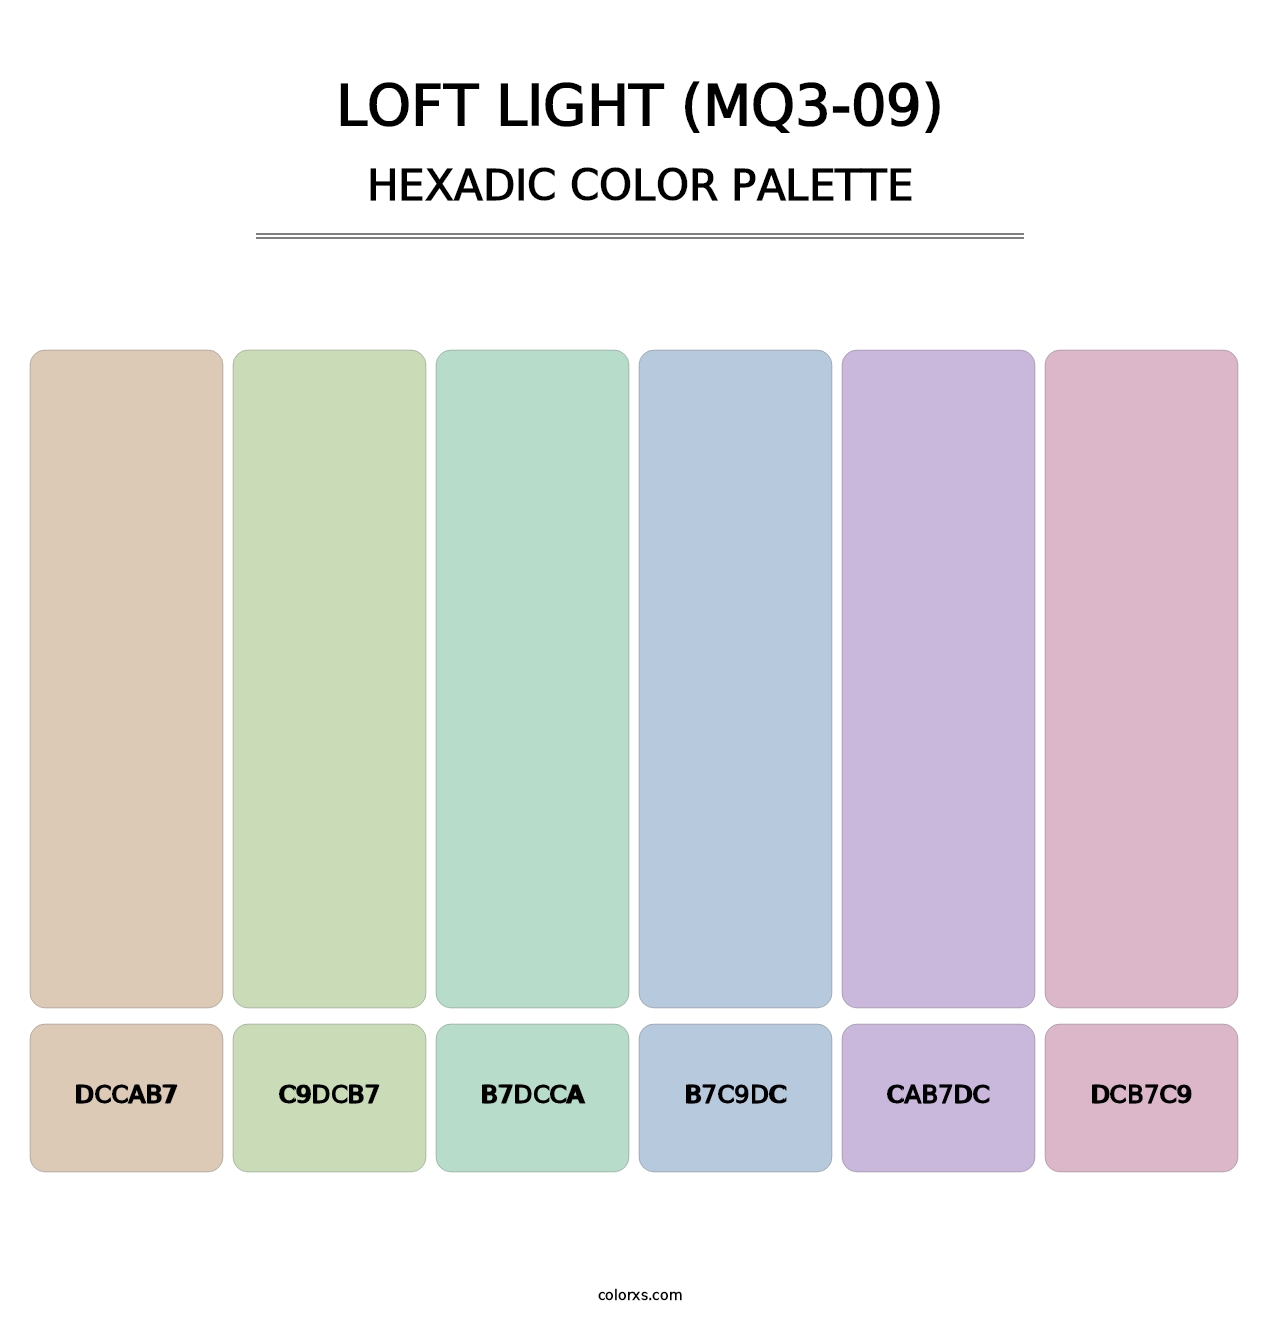 Loft Light (MQ3-09) - Hexadic Color Palette